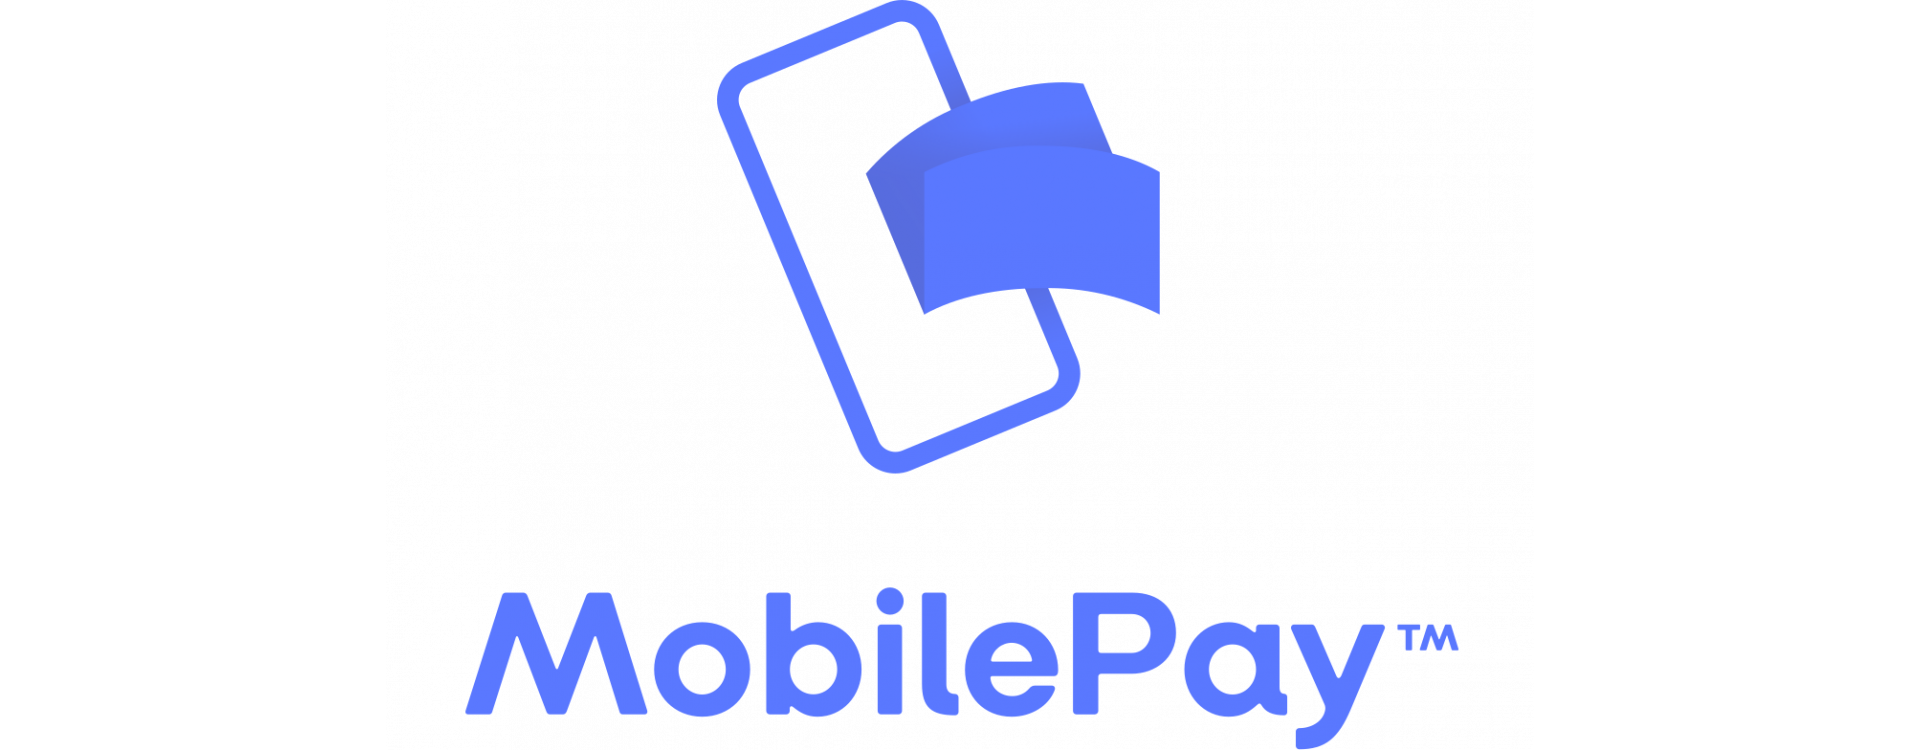 Jetzt können Sie mit MobilePay bezahlen